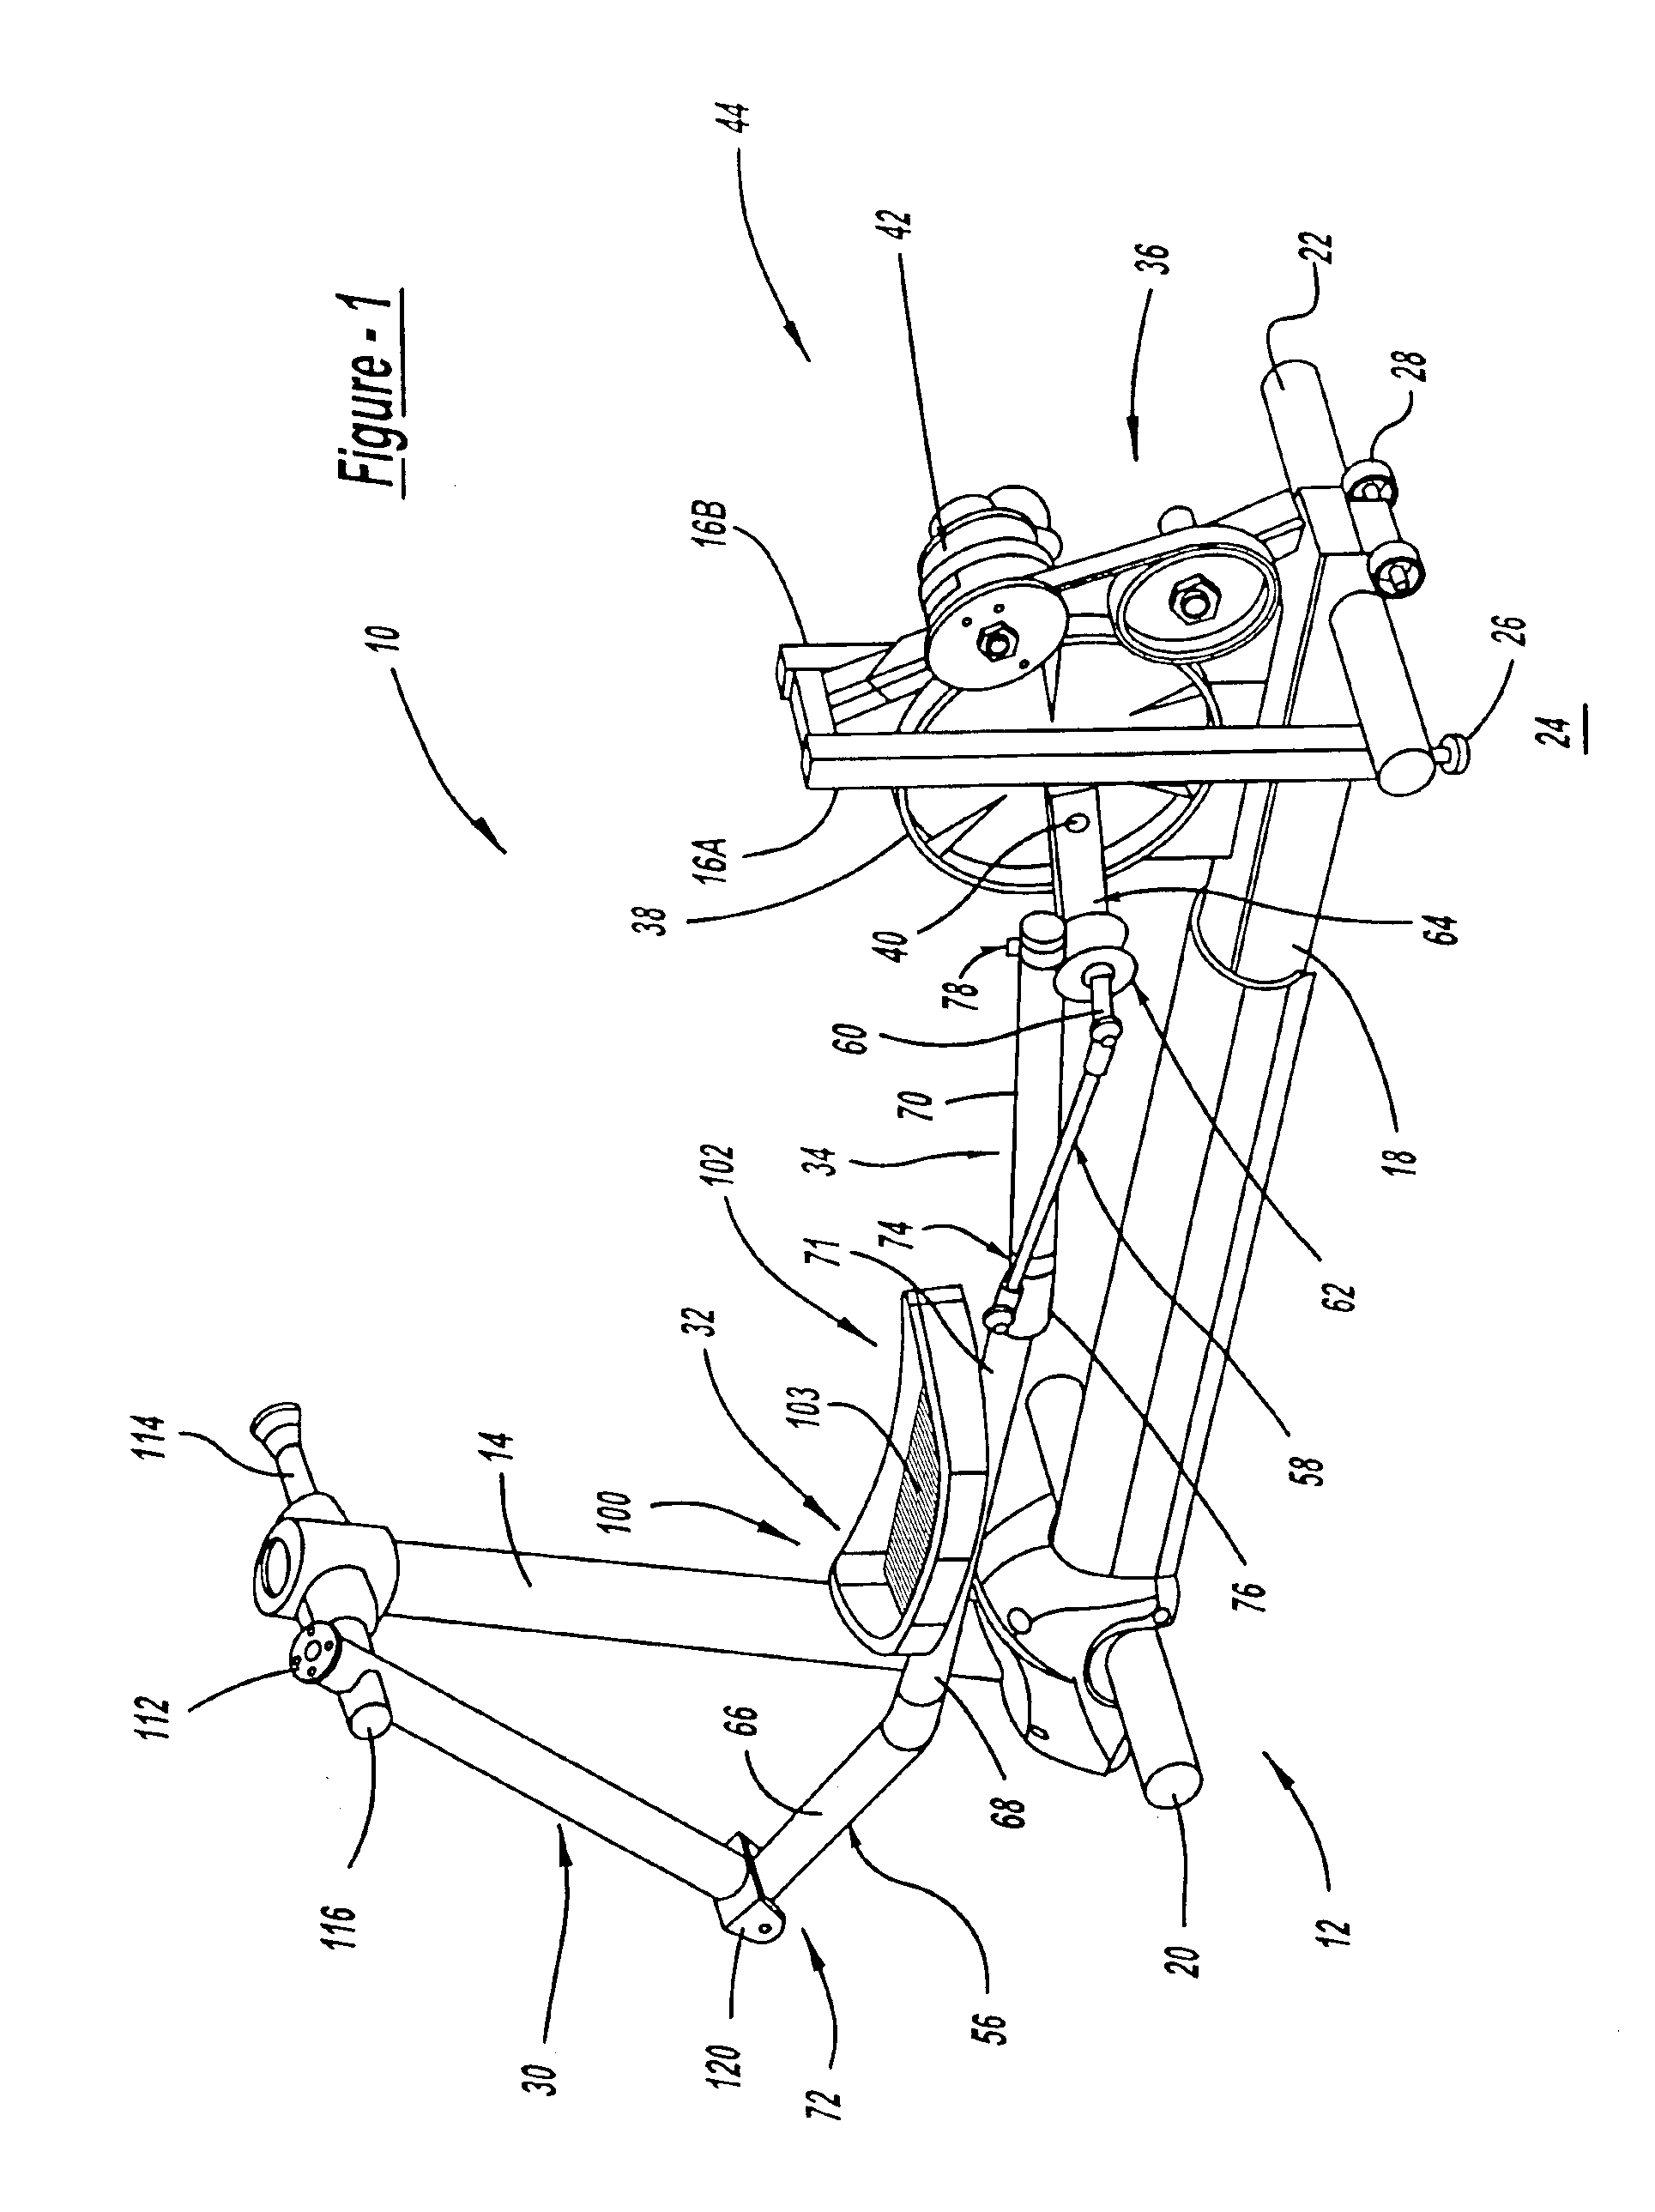 Elliptical step exercise apparatus